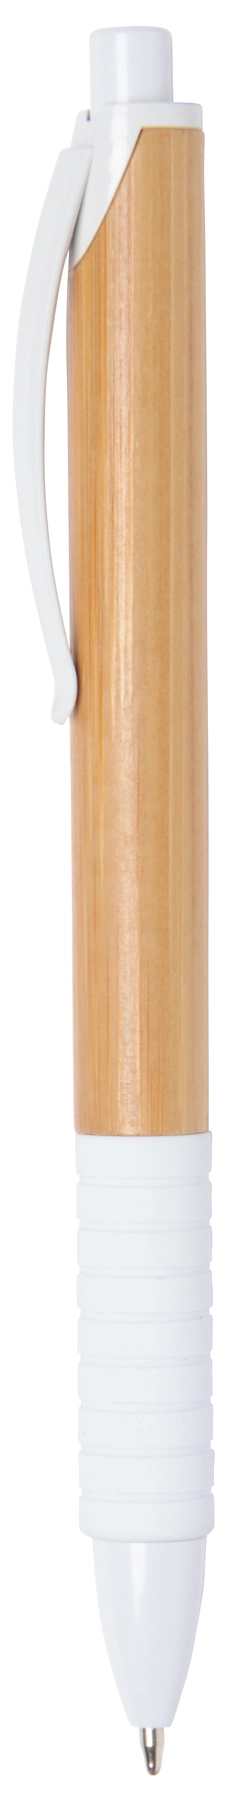 Długopis BAMBOO RUBBER, biały, brązowy 56-1101537 brązowy